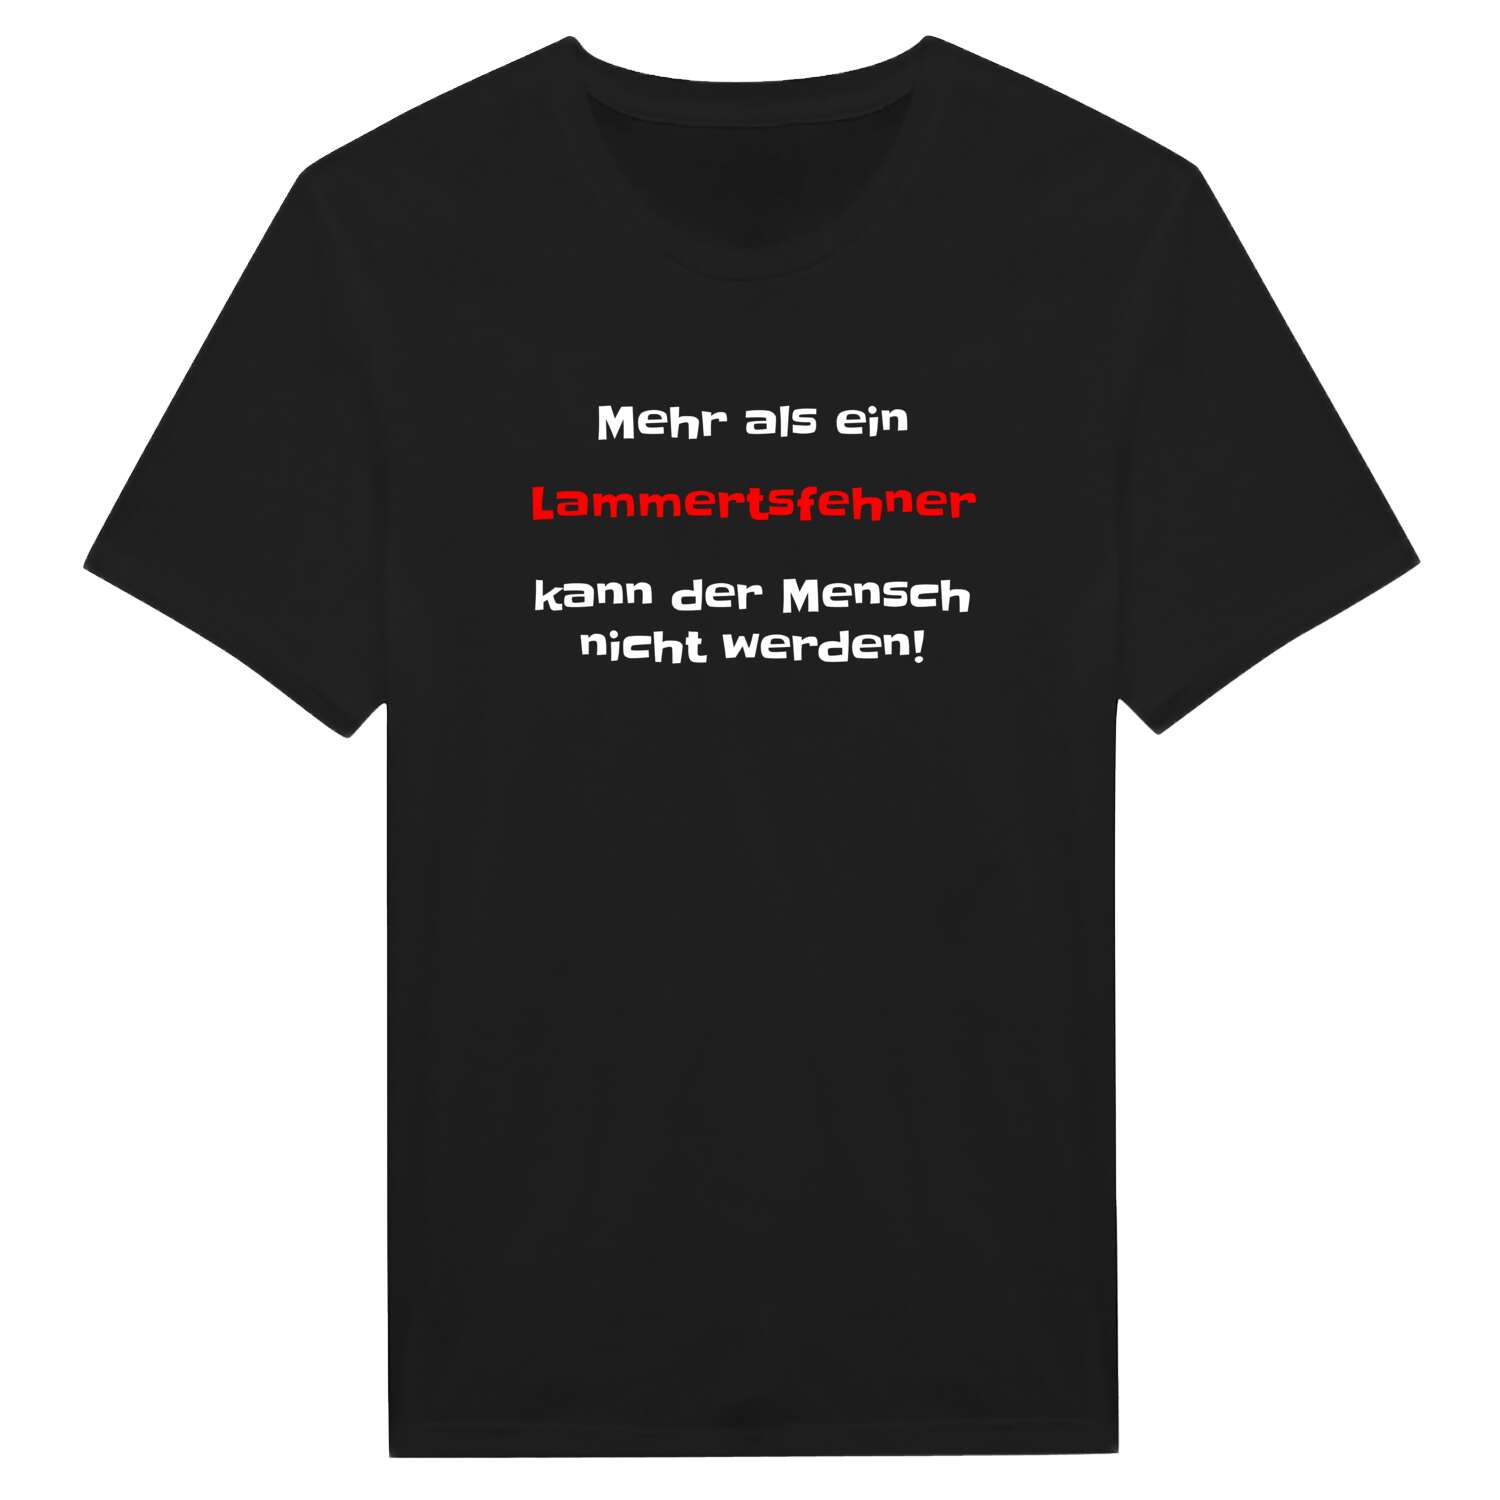 Lammertsfehn T-Shirt »Mehr als ein«